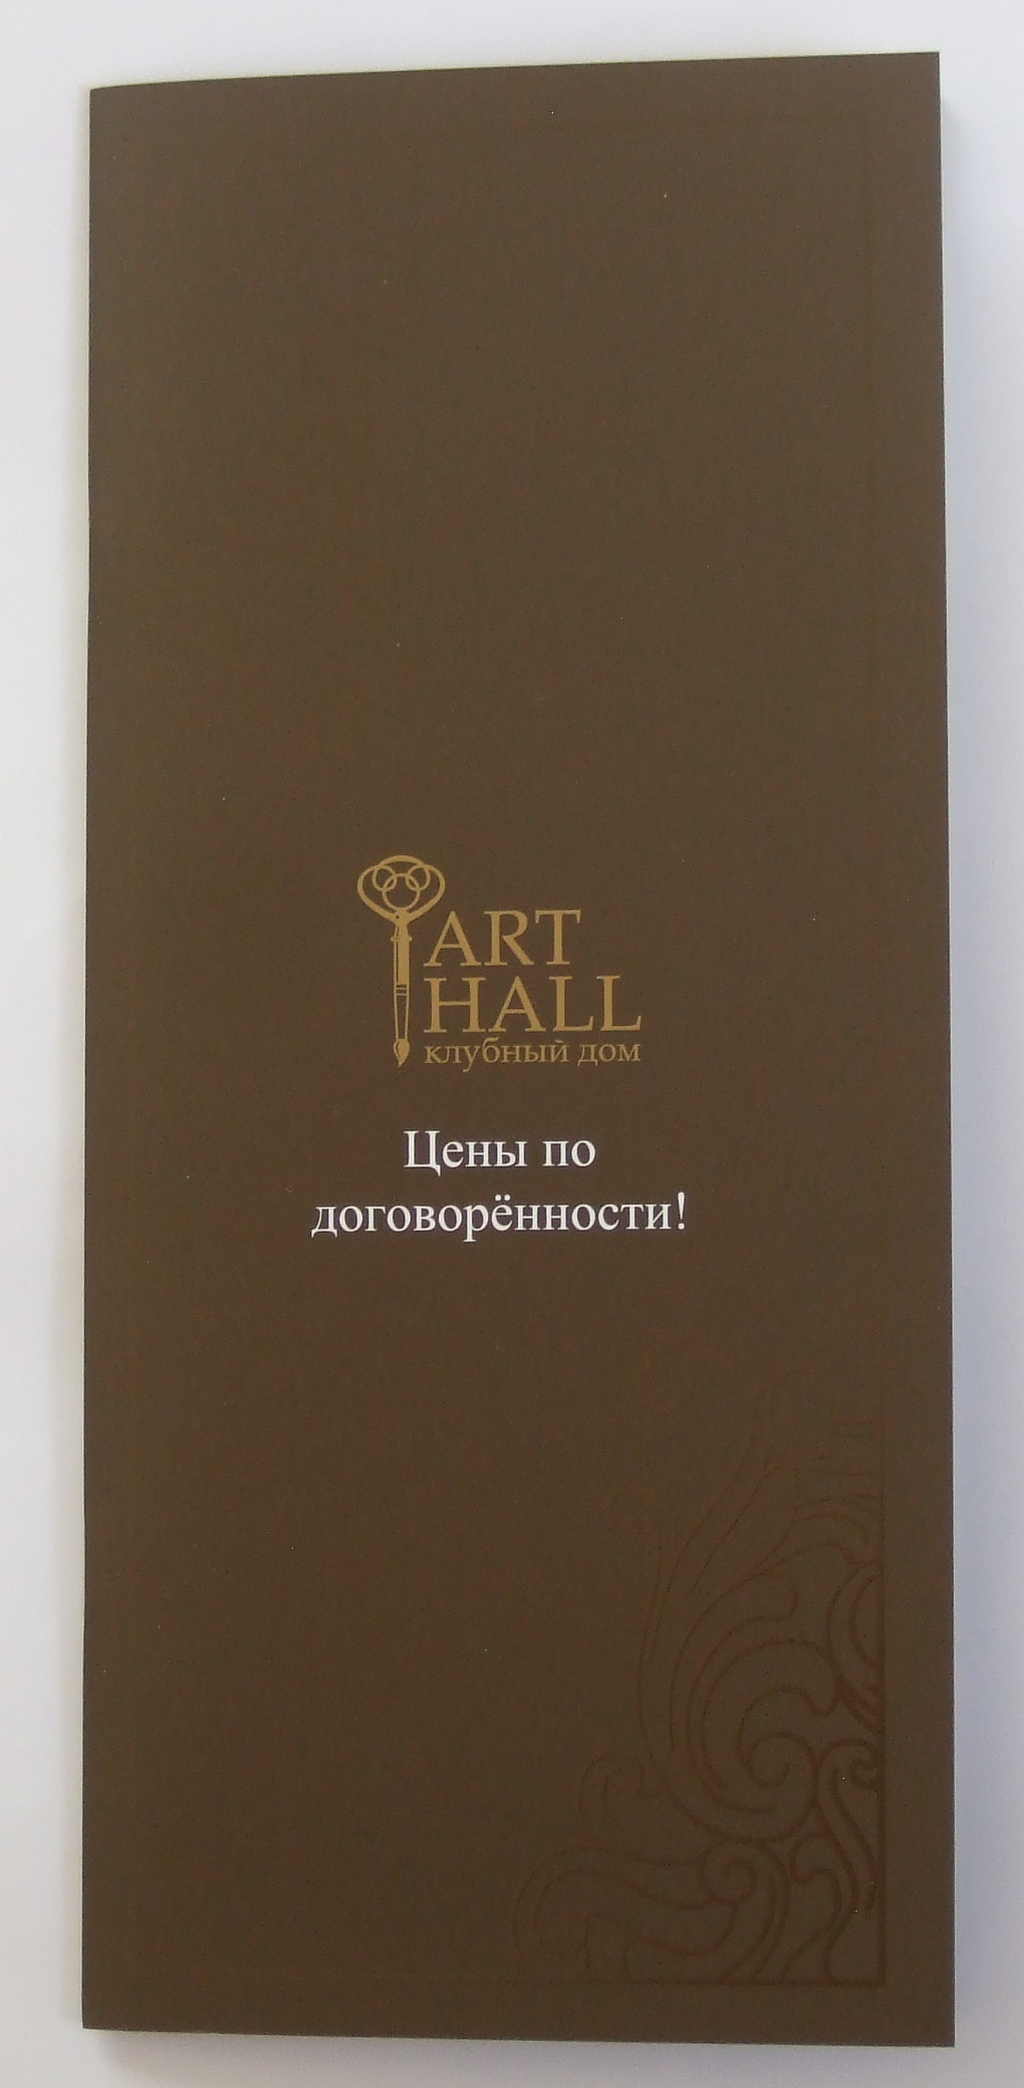 Друк каталогів «Art Hall». Поліграфія друкарні Макрос, виготовлення каталогів, специфікація 964973-1